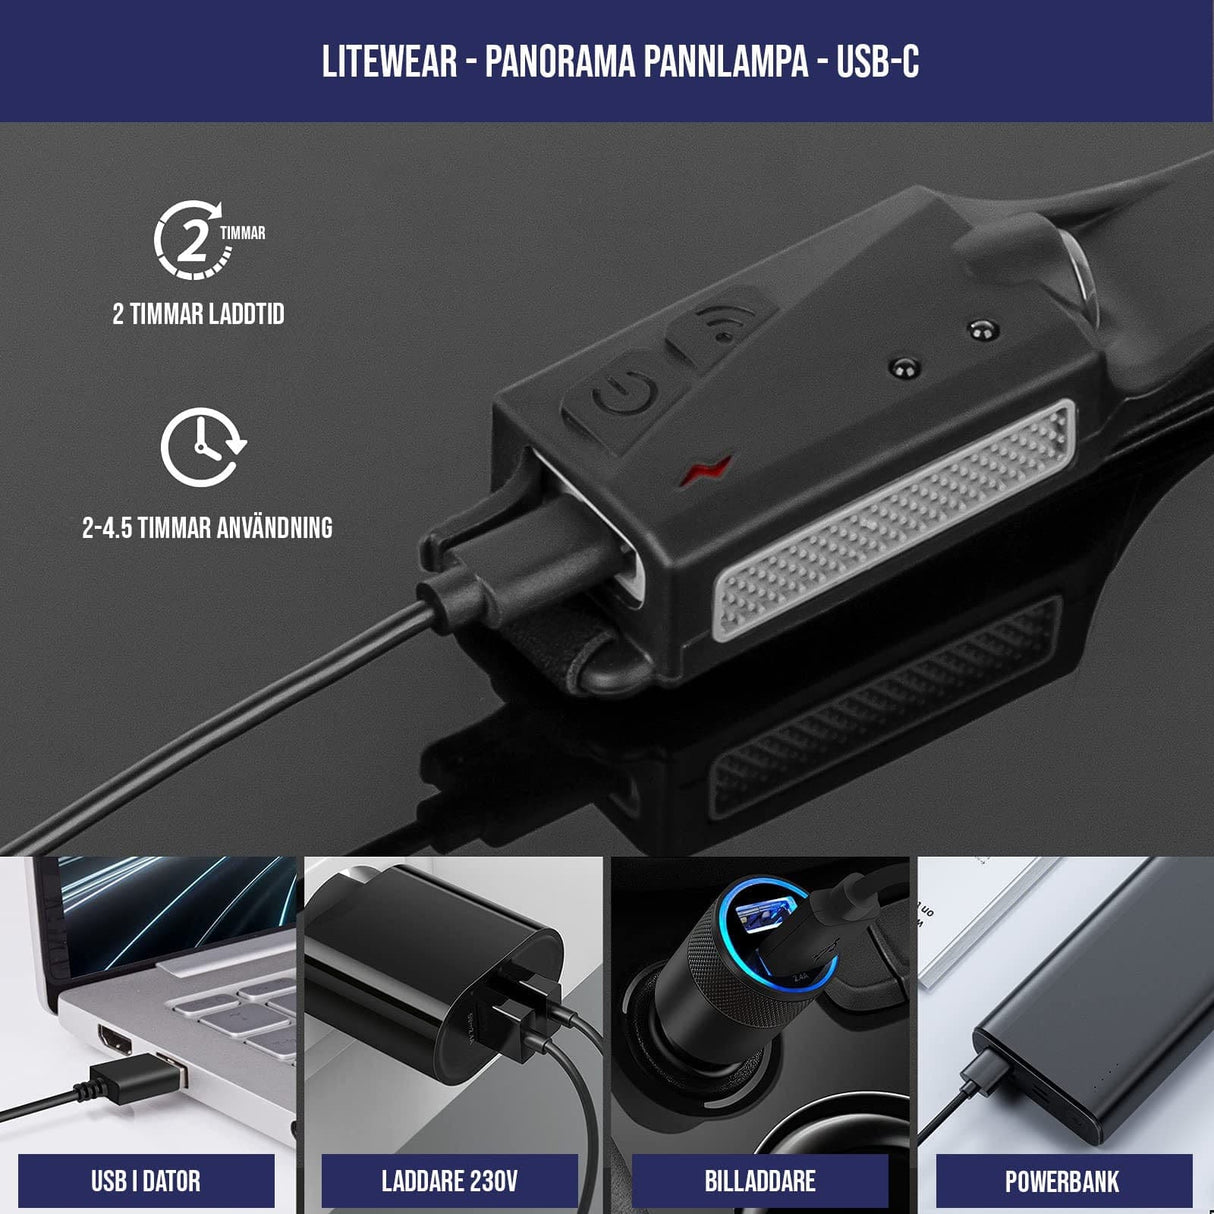 Pannlampa - Panorama - USB-C